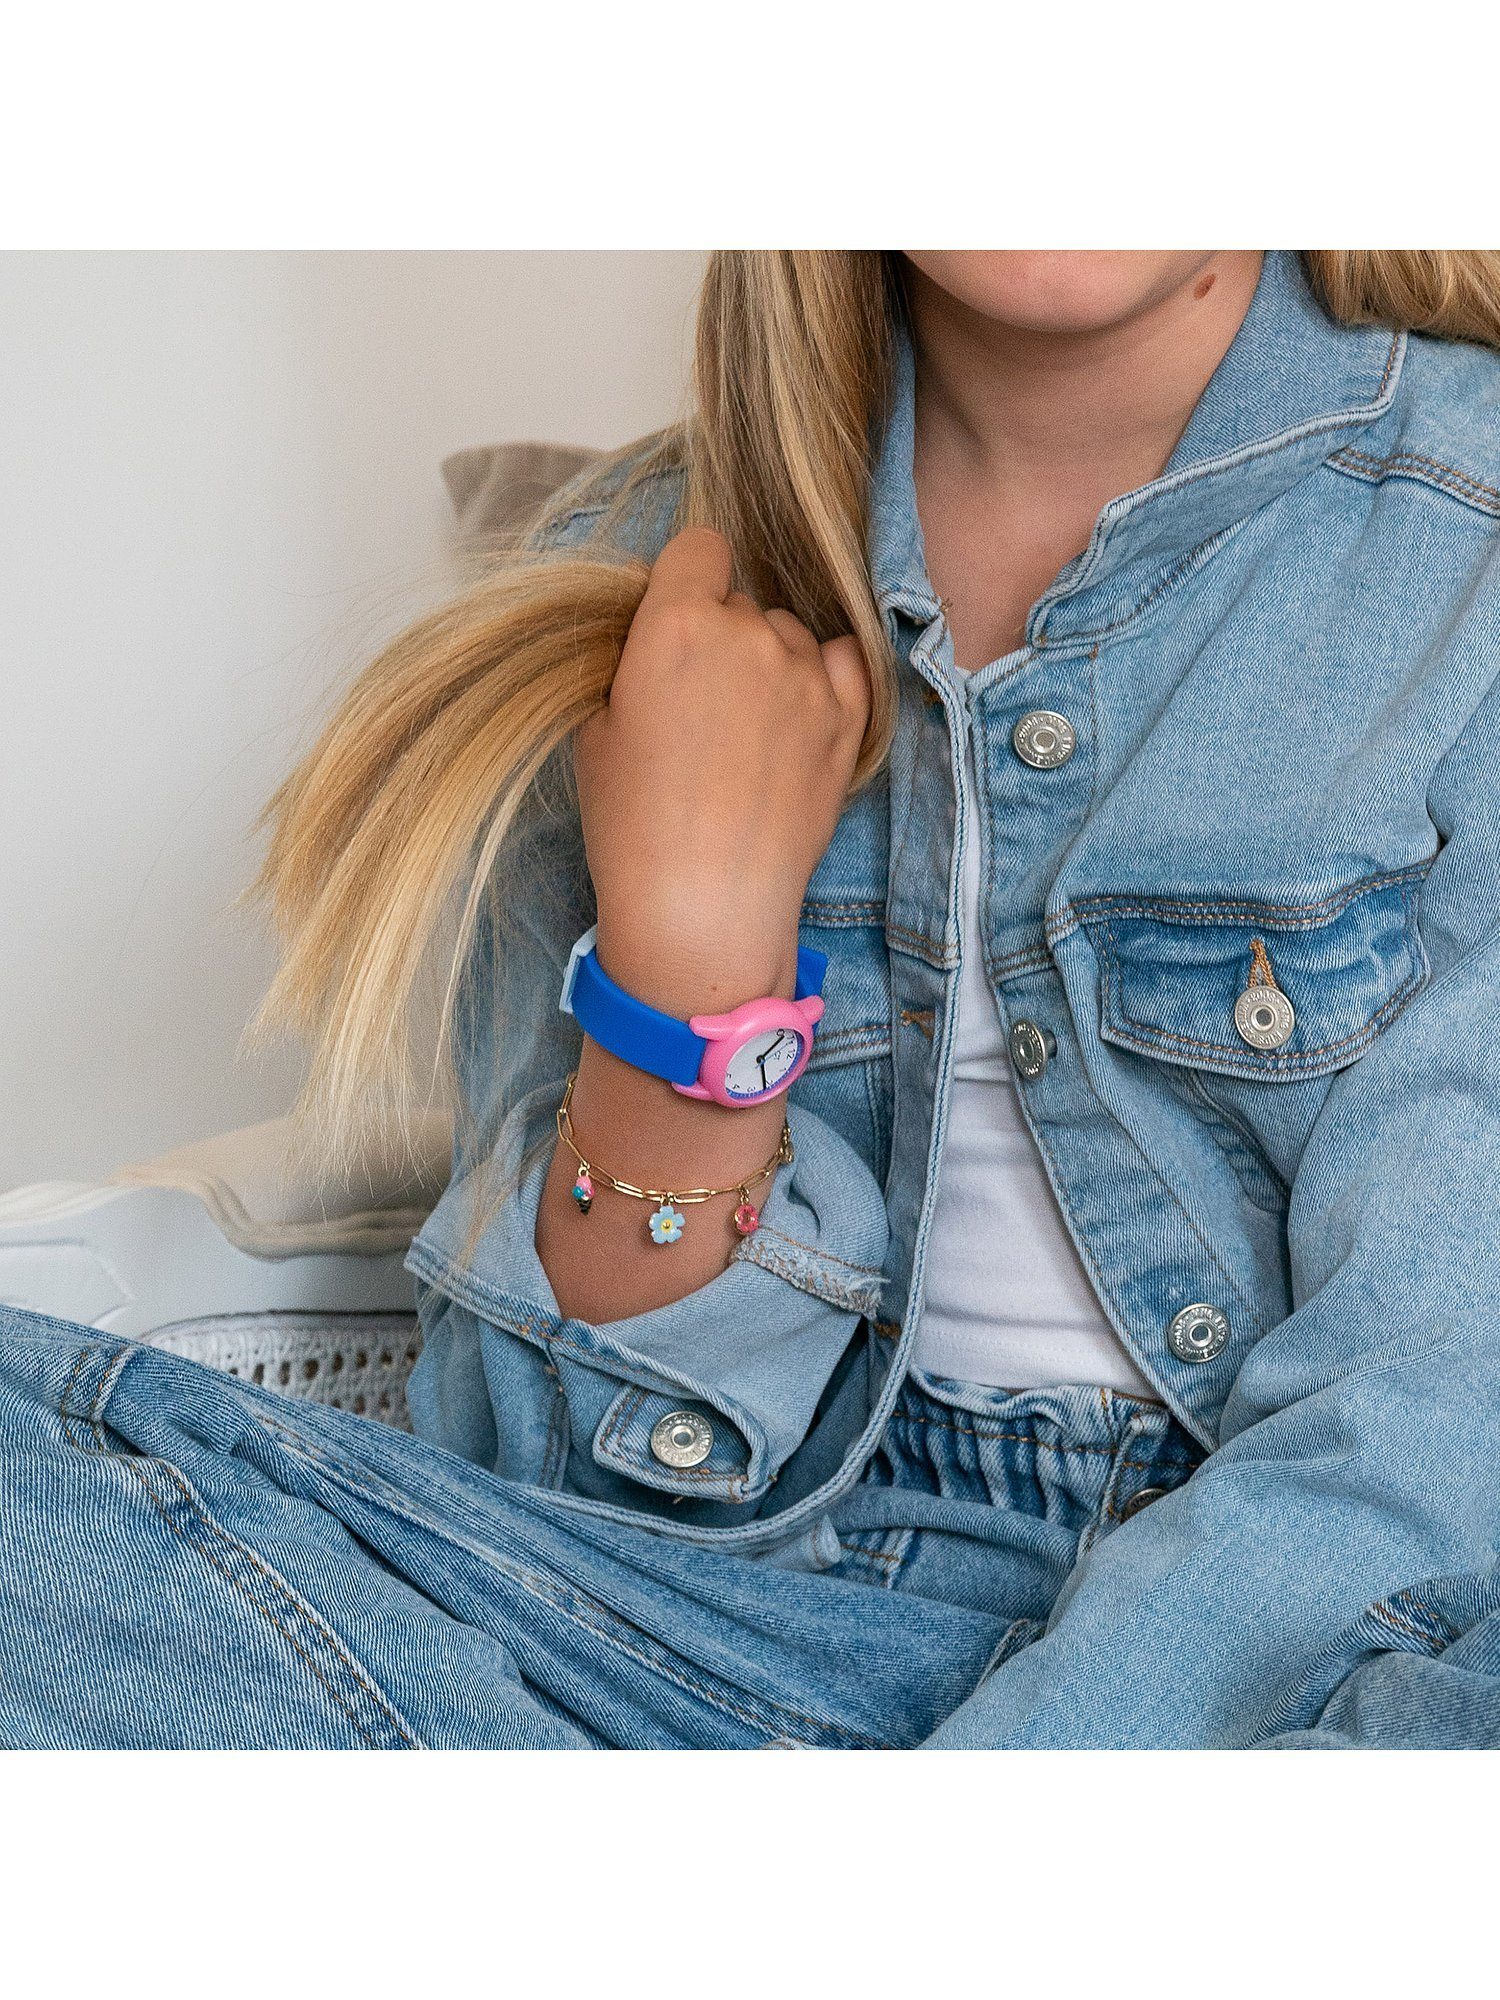 Kids Mädchen-Kinderarmband COOL Edelstahl, Time trendig gold TIME Armband Cool